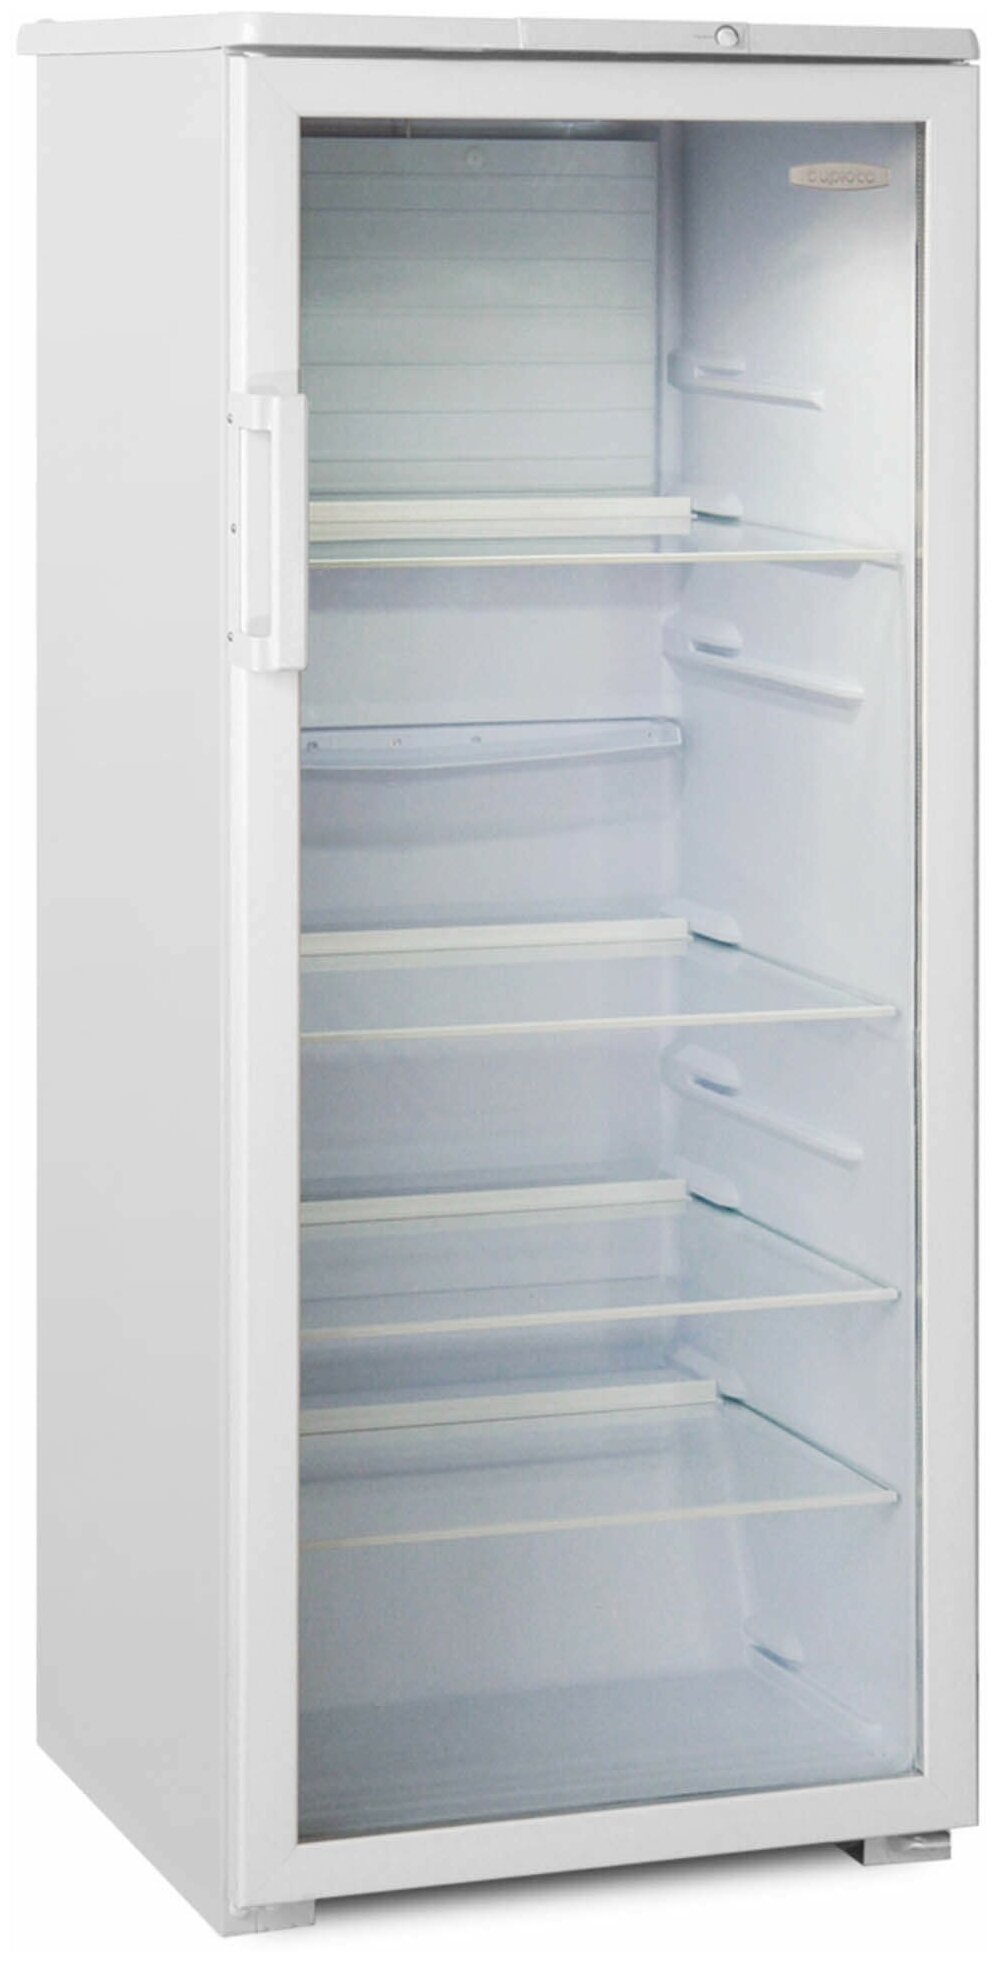 Холодильная витрина Бирюса Б-290 белый, однокамерный, общий объем 290л, расположение морозильной камеры: морозильная камера отсутствует - фотография № 3